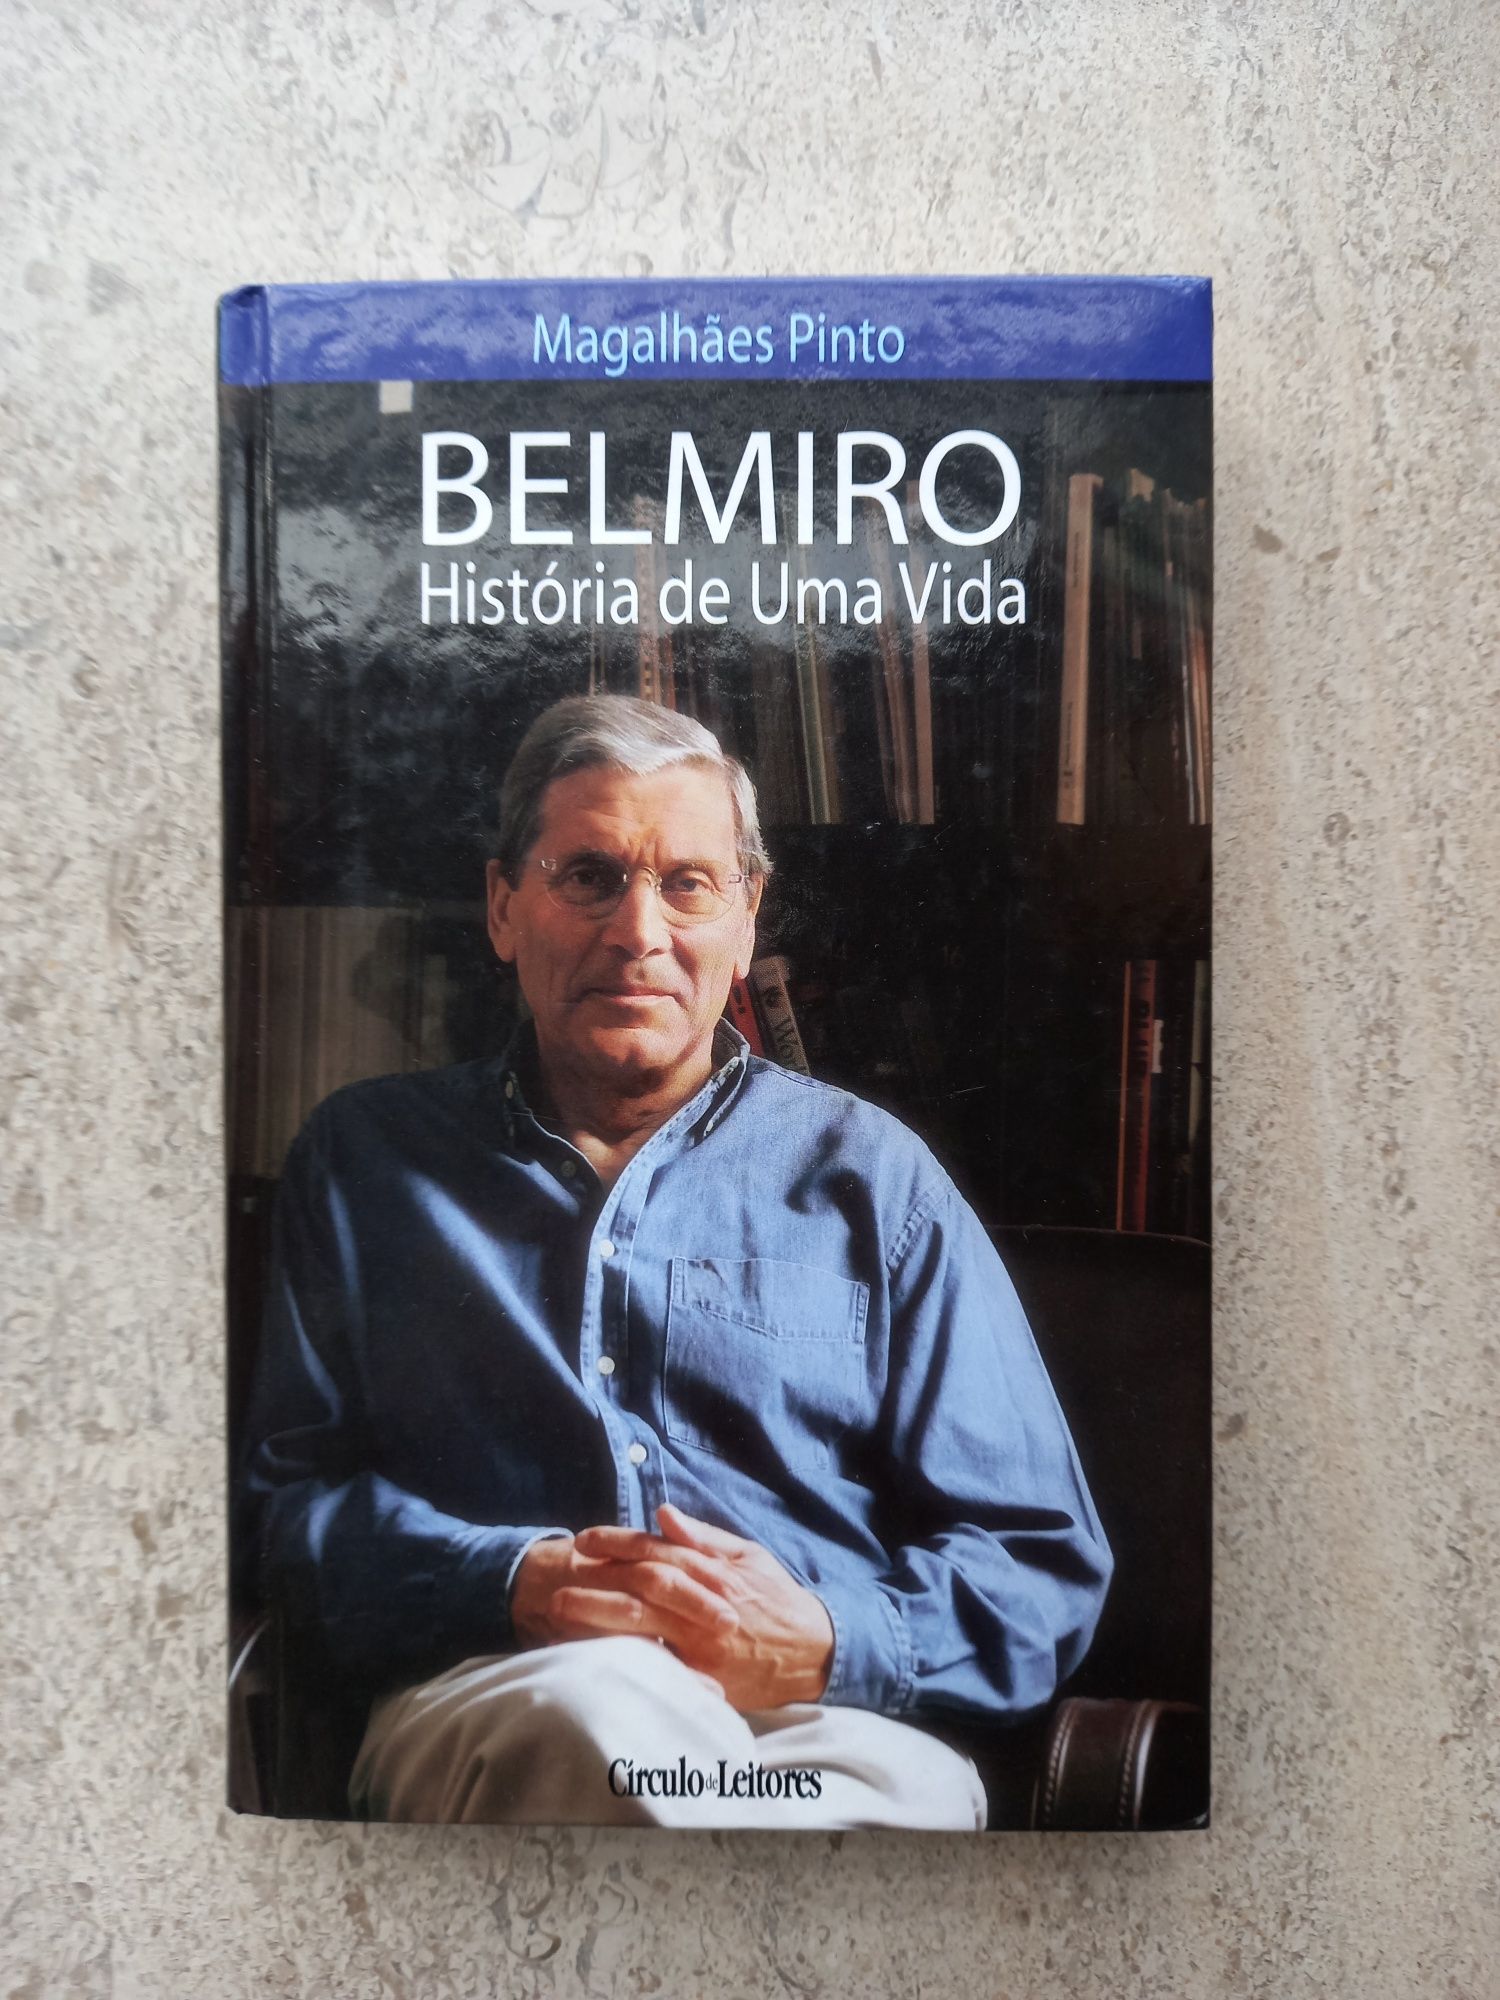 Belmiro - História de uma Vida, Magalhães Pinto